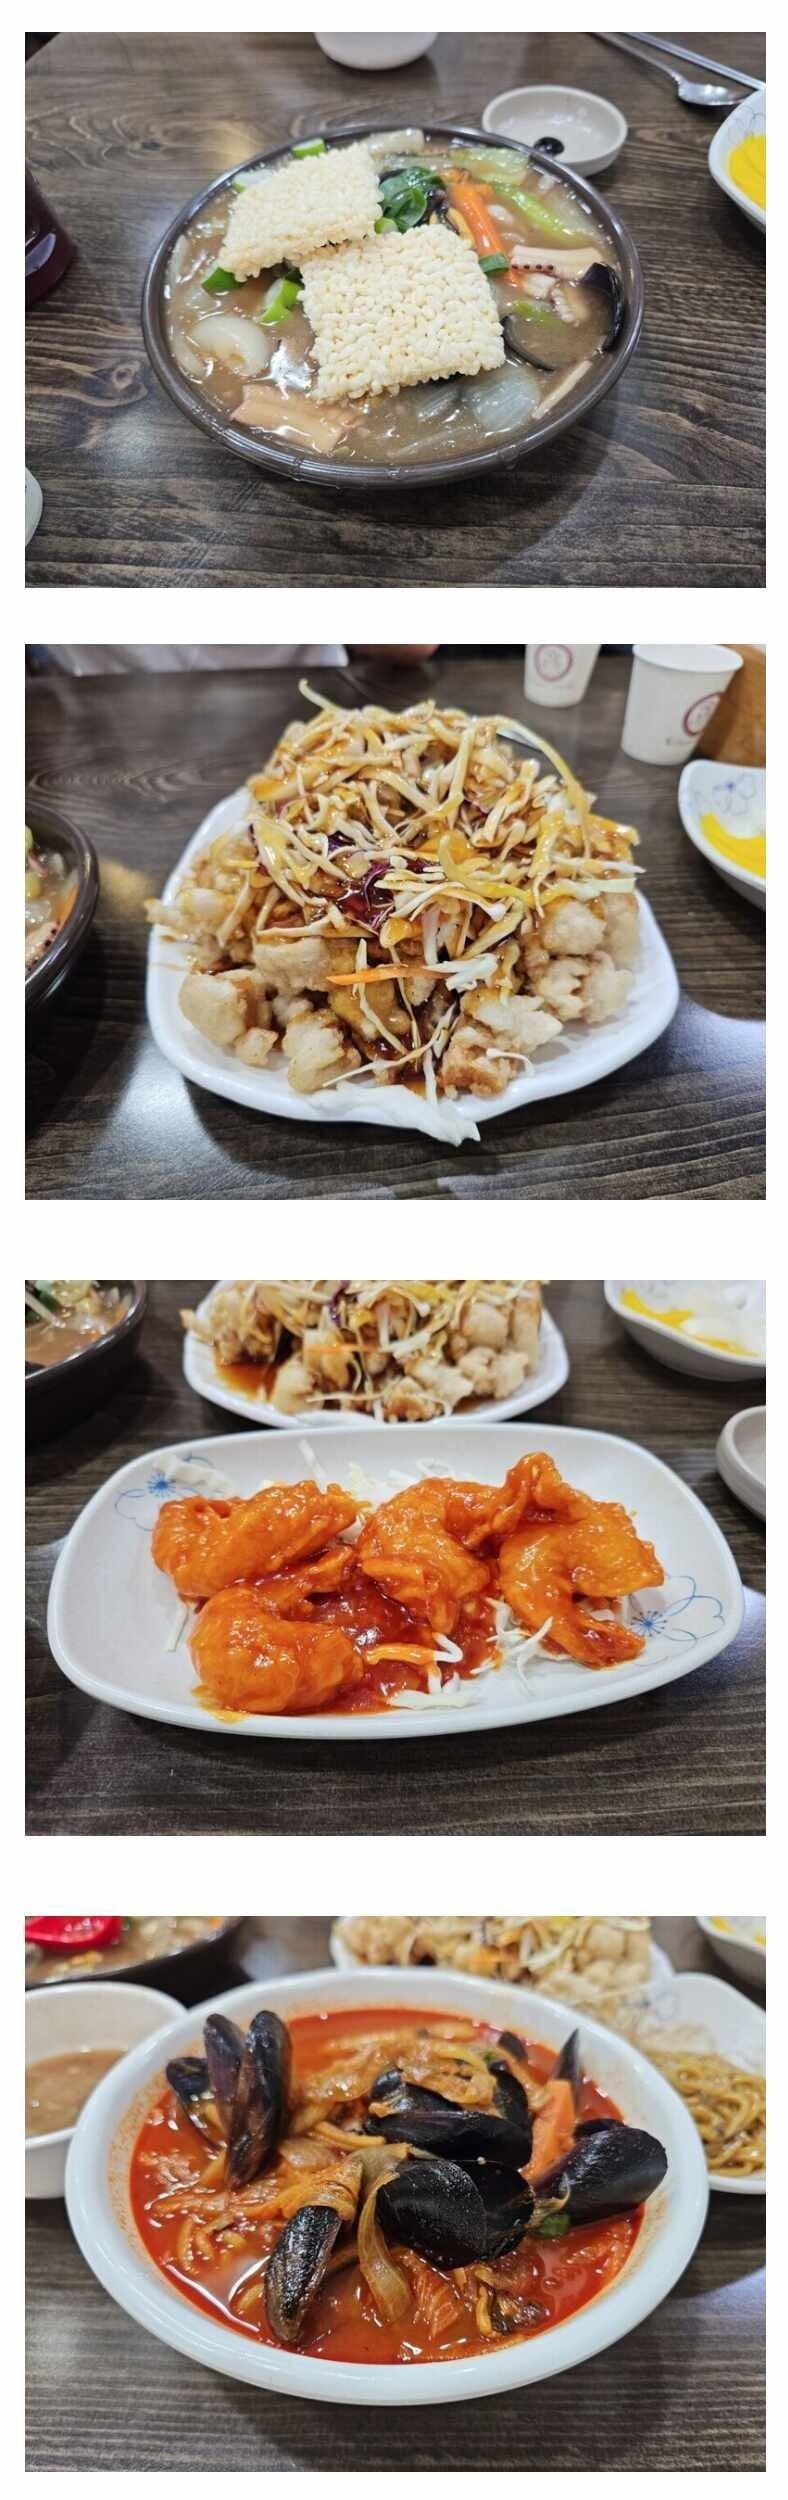 청주 중국집 코스 요리 13,000원